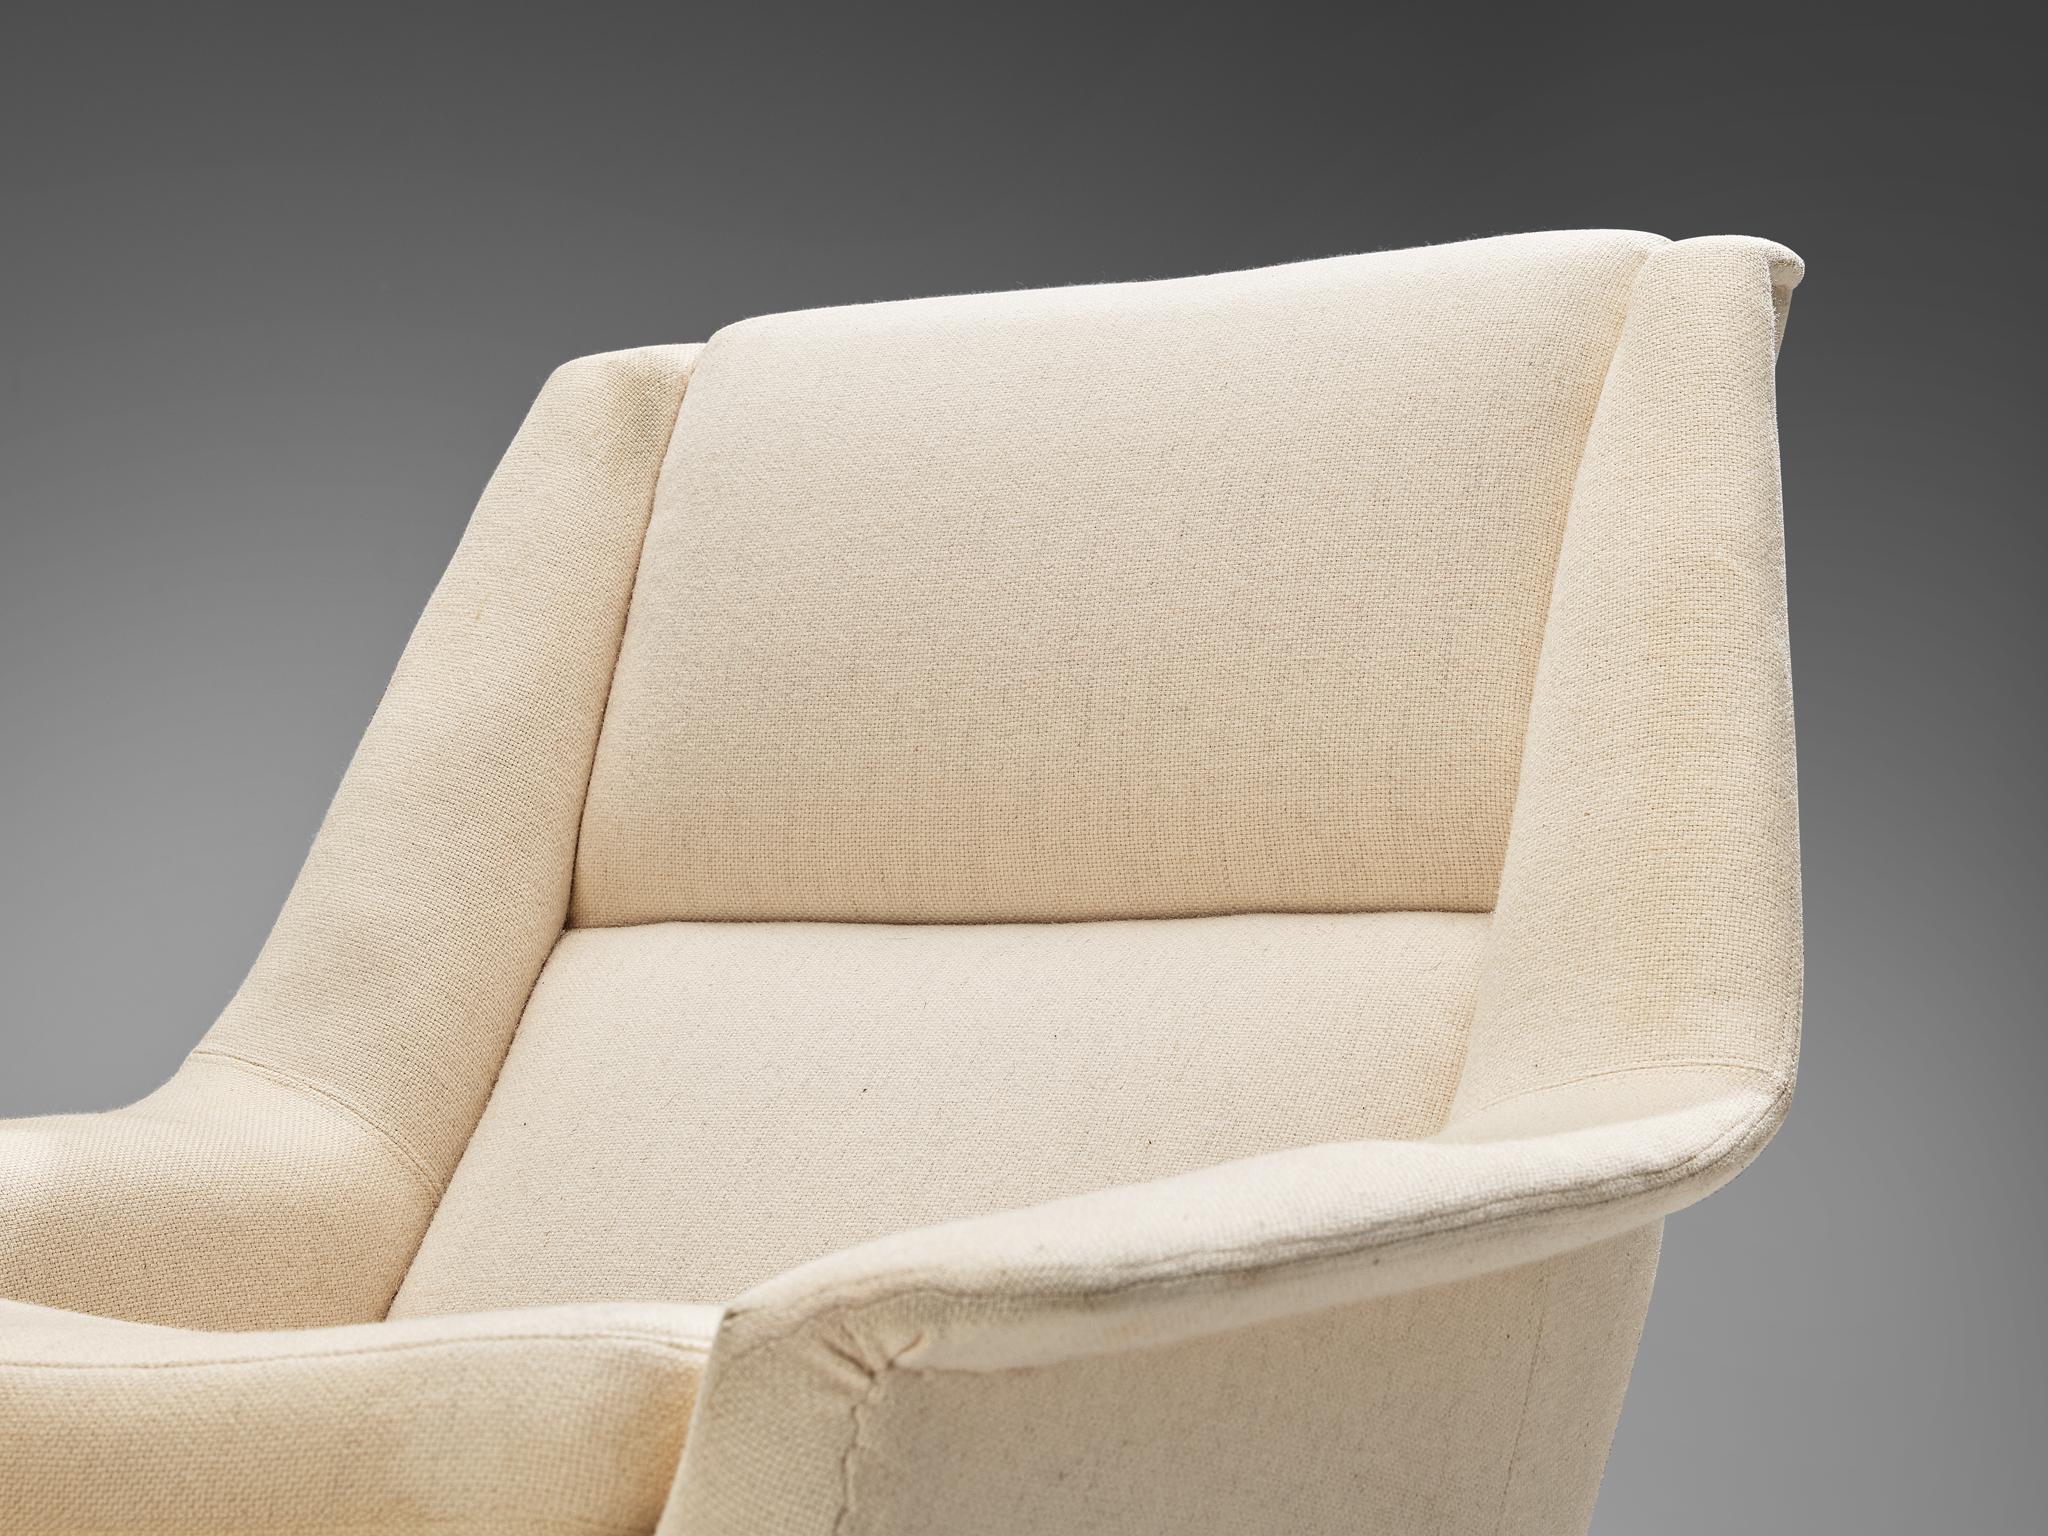 Folke Ohlsson for Fritz Hansen Lounge Chair in White Upholstery